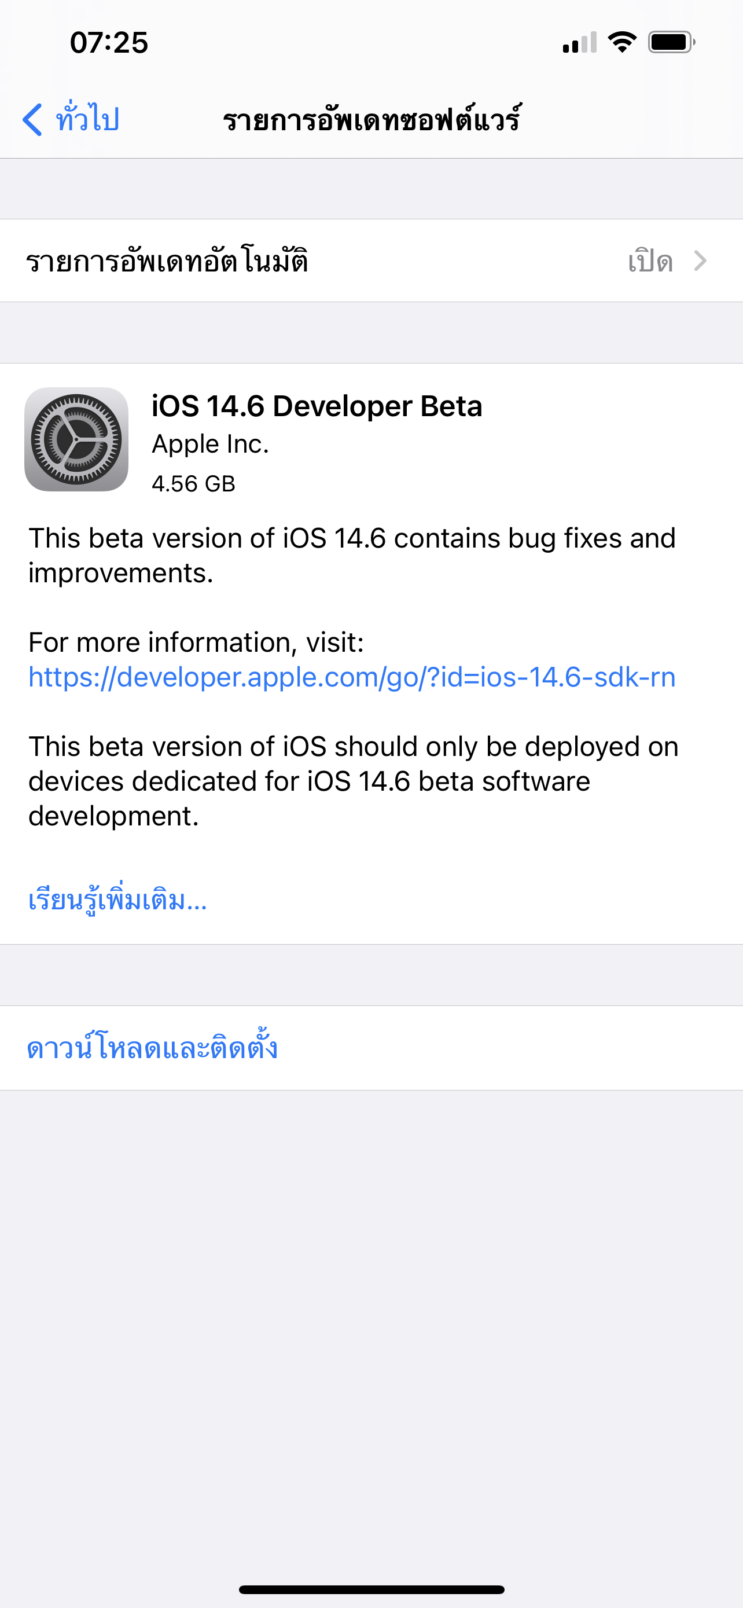 eM Client Pro 9.2.2038 instal the last version for apple